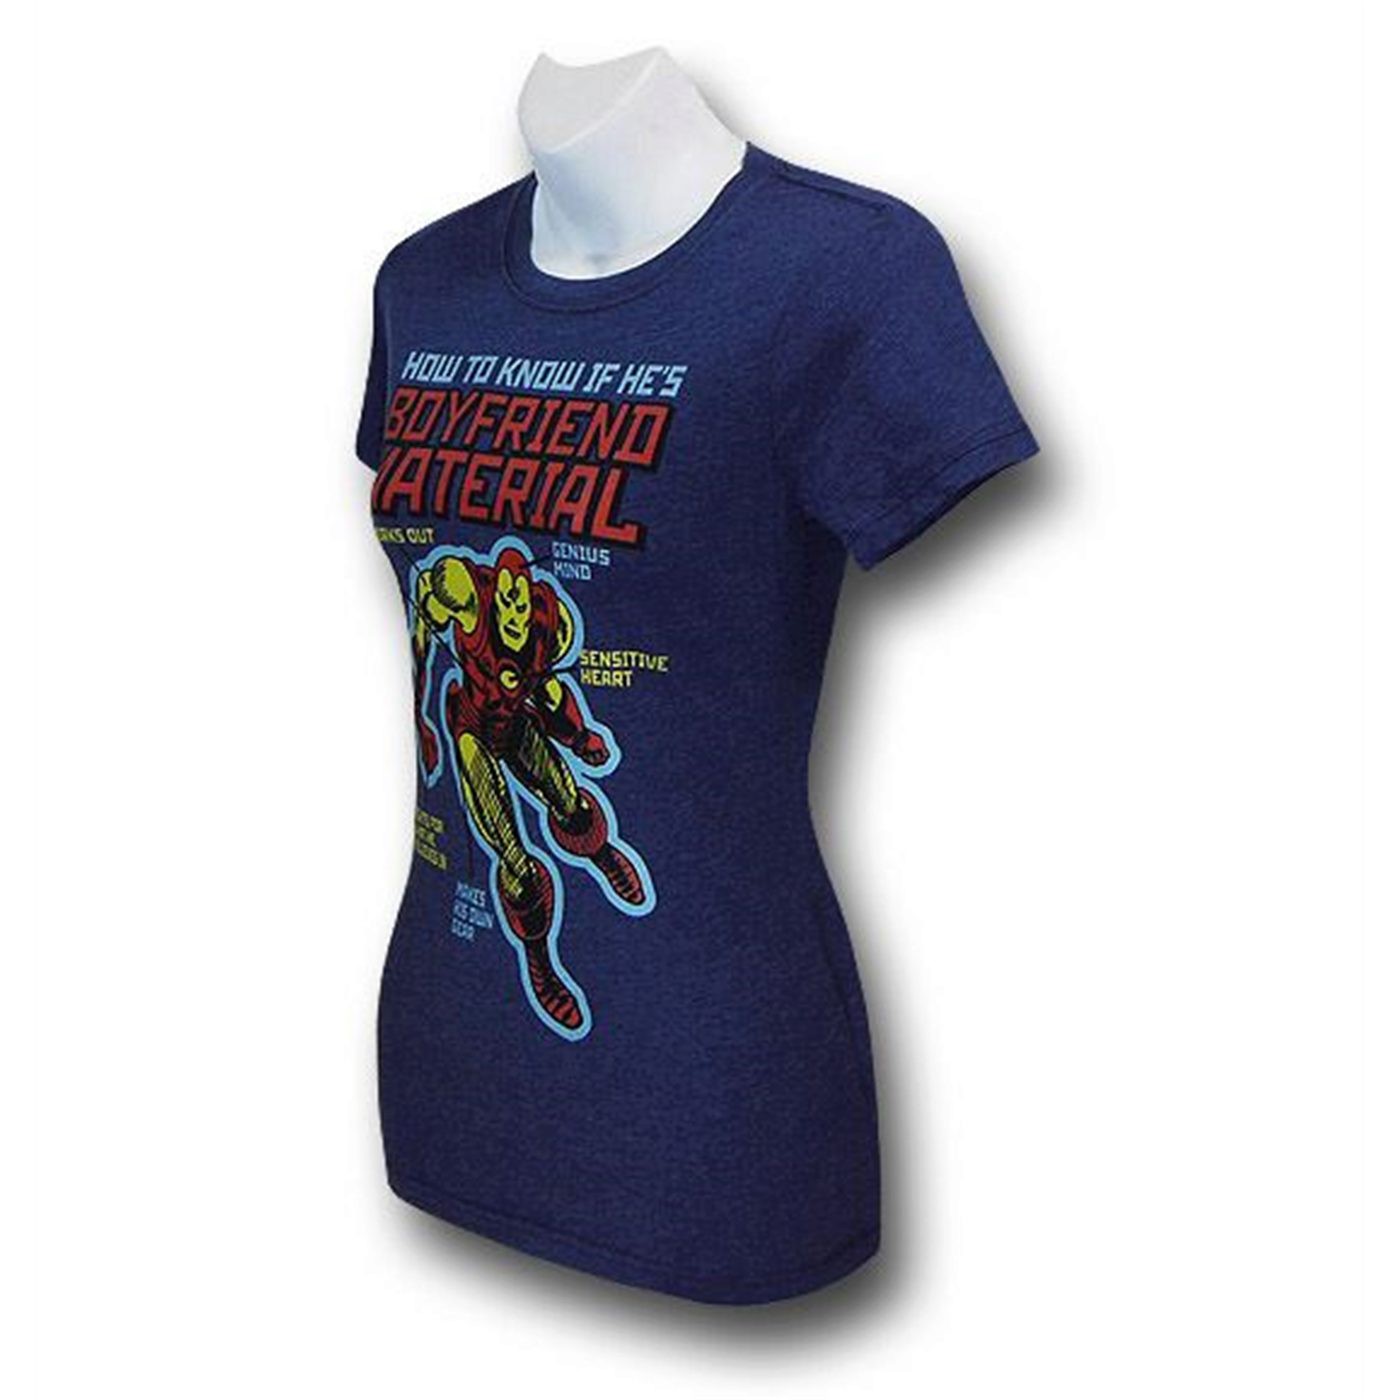 Iron Man Boyfriend Material Juniors T-Shirt